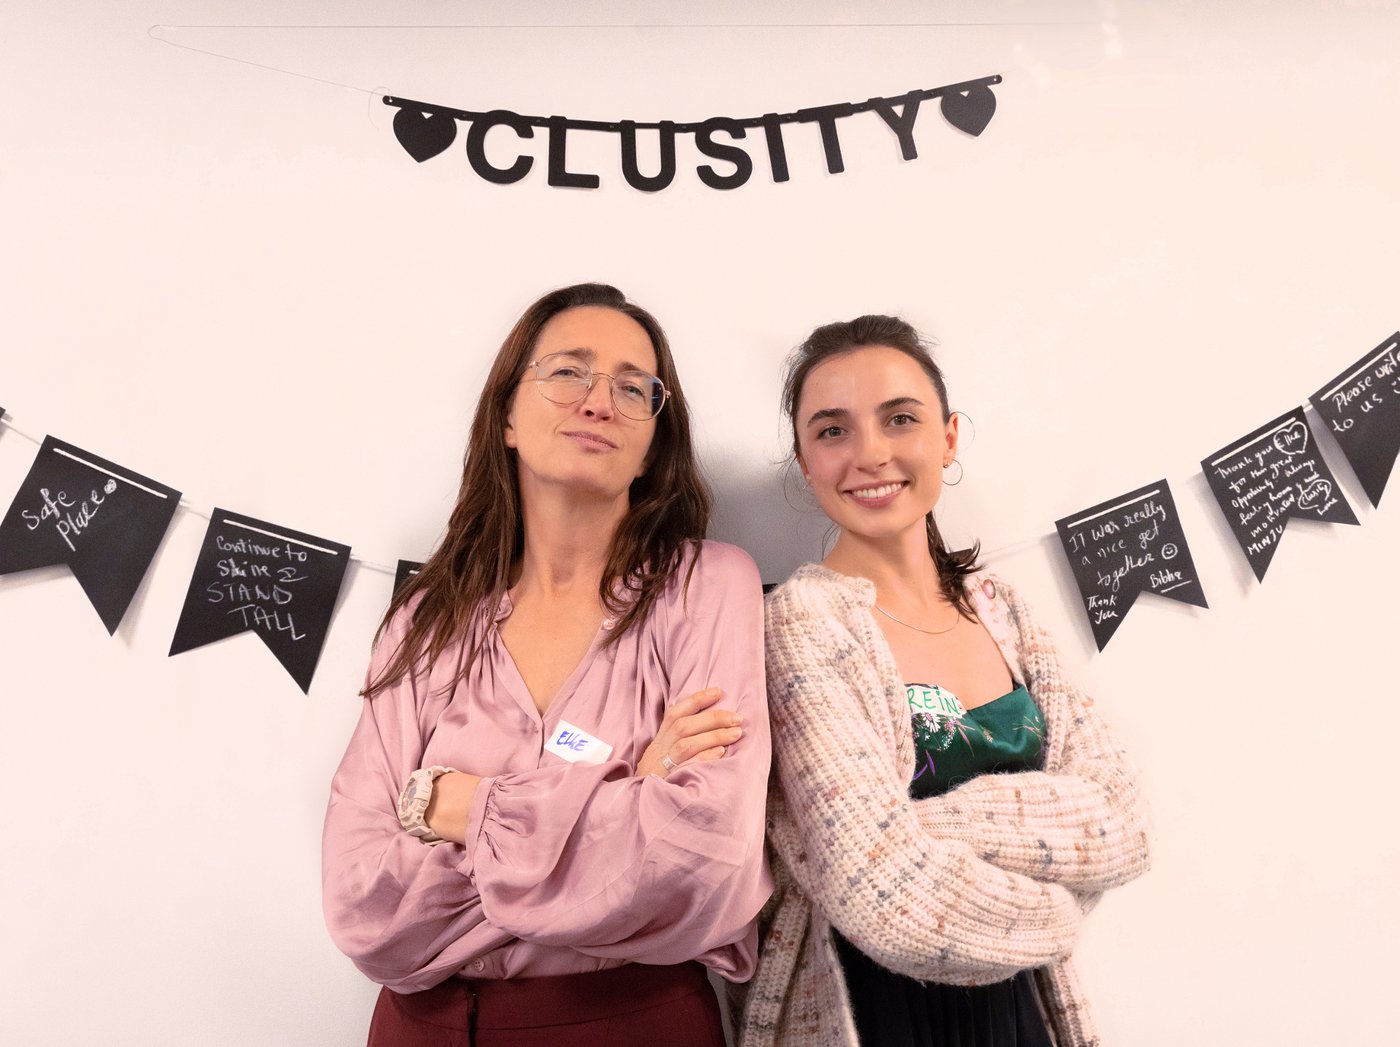 Dit ondernemersduo lanceert het eerste communityplatform voor vrouwen in tech: “Wij hacken de similarity bias en het verborgen arbeidsmarktfenomeen door vrouwen zelf met elkaar te laten verbinden en opportuniteiten te scheppen”